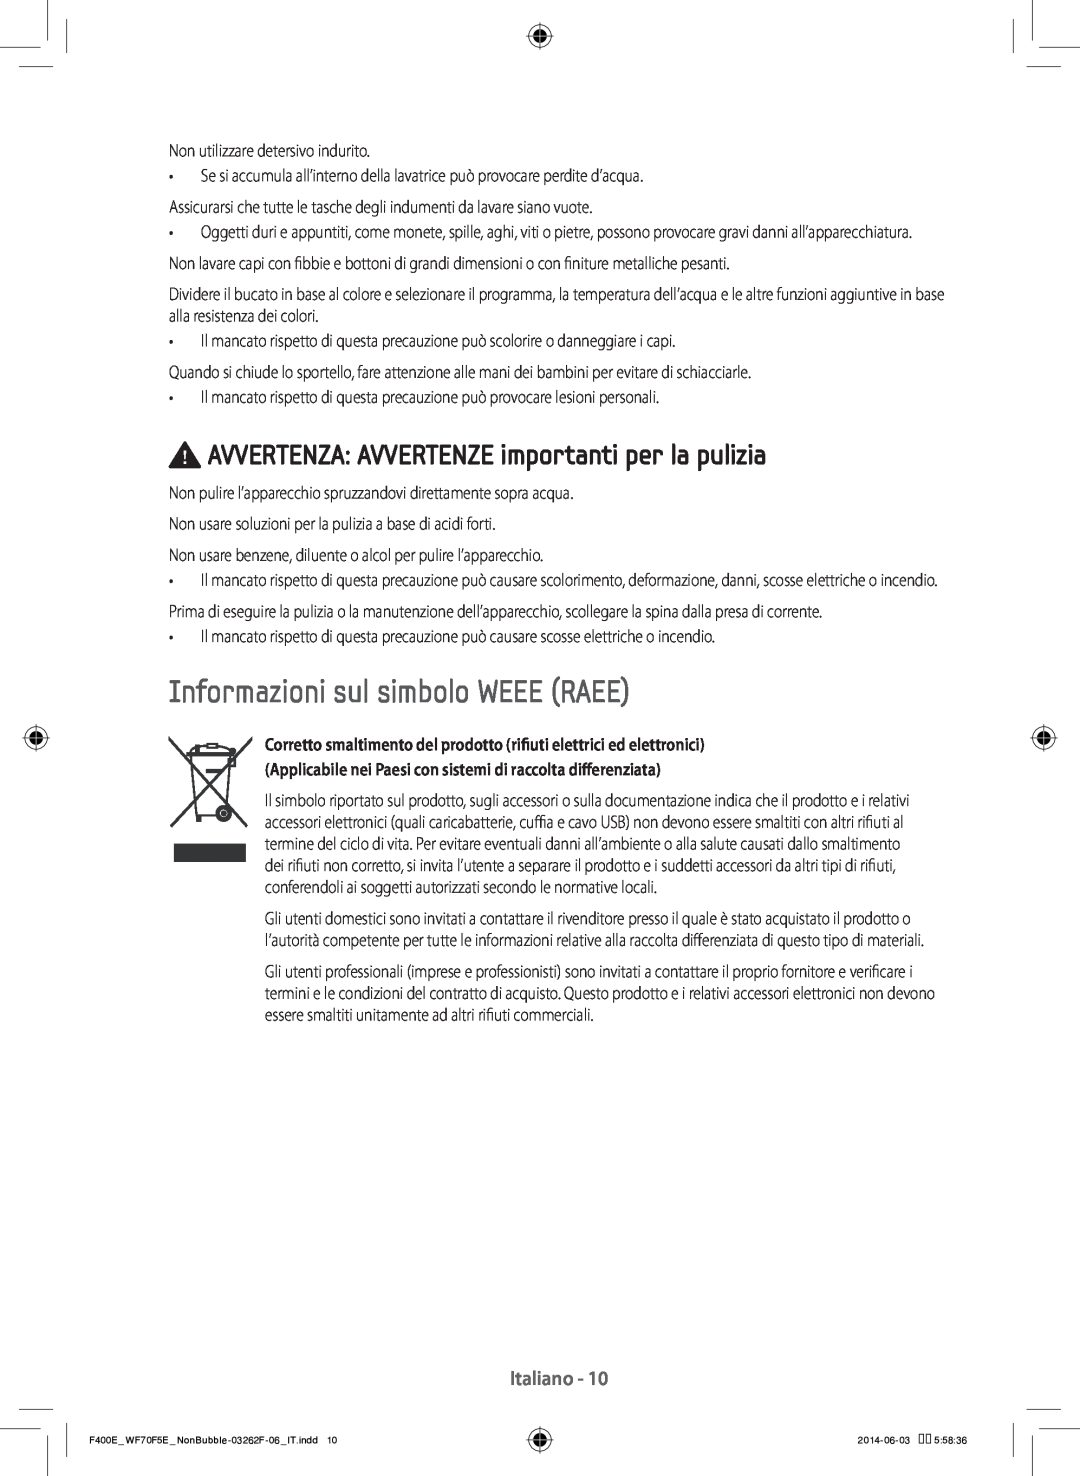 Samsung WF80F5E0N2W/ET manual Informazioni sul simbolo WEEE RAEE, AVVERTENZA AVVERTENZE importanti per la pulizia, Italiano 